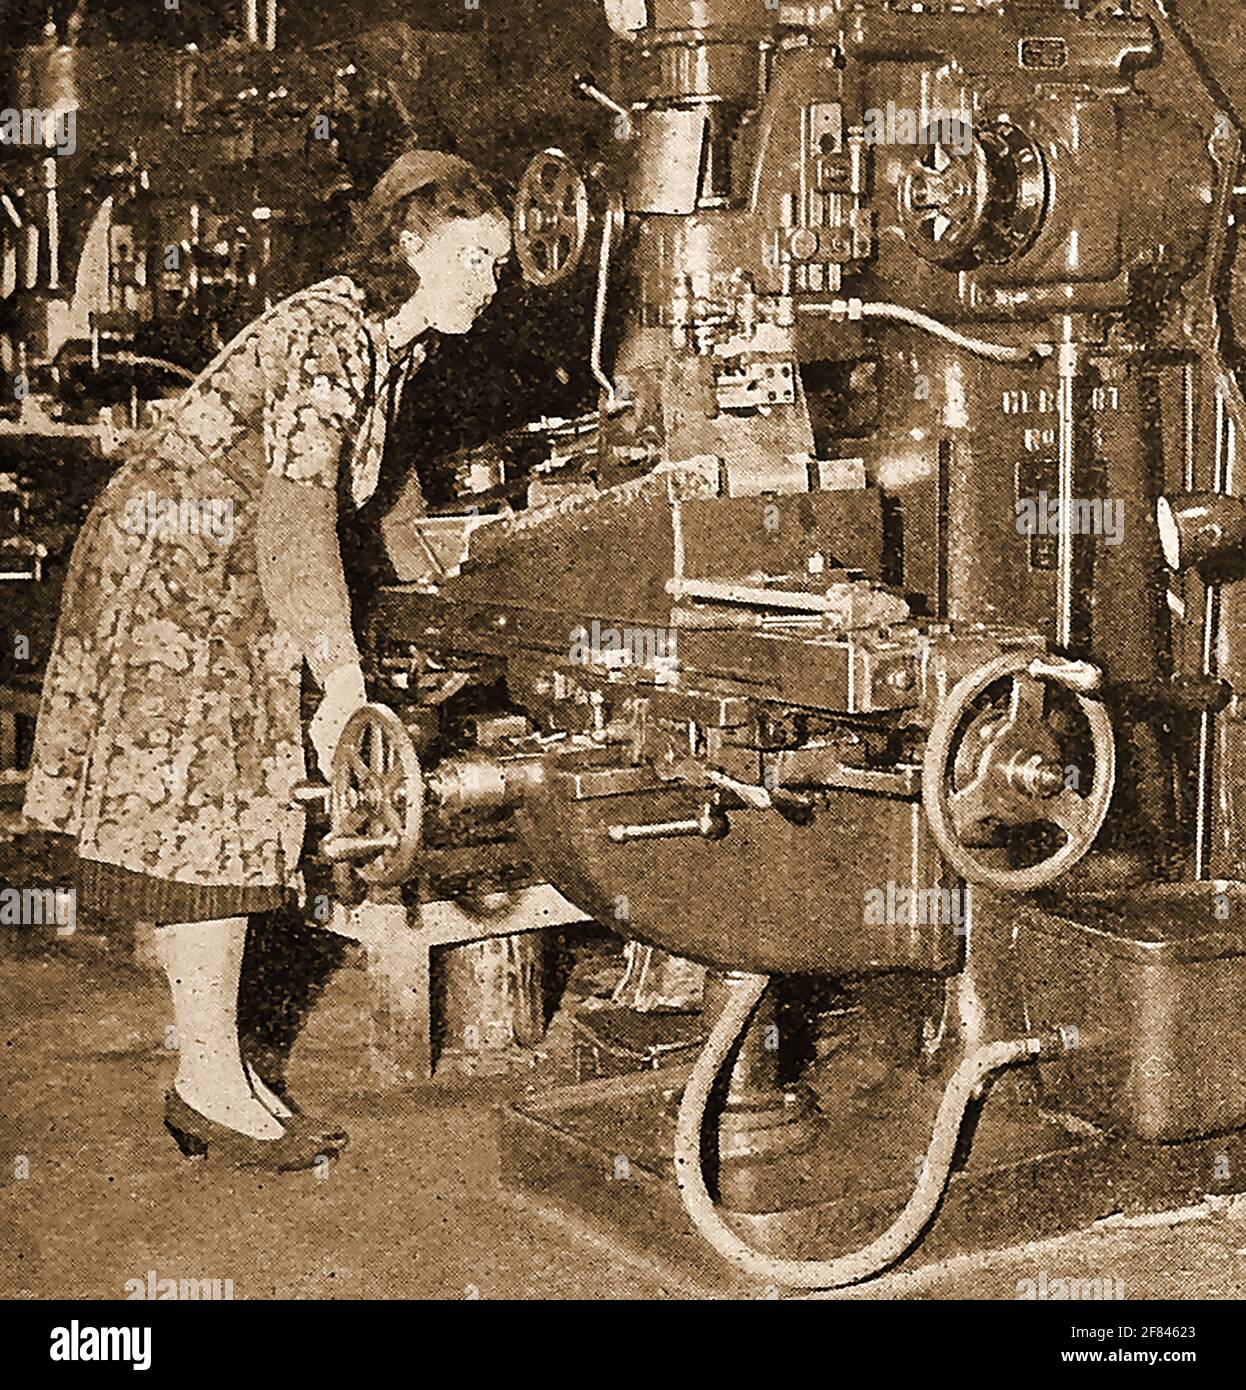 WW2 - femmes au travail en Grande-Bretagne en 1941 - UNE photo de presse de l'époque montrant une femme mécanicien exploitant une machine de fabrication de pièces de mitrailleuses. Banque D'Images